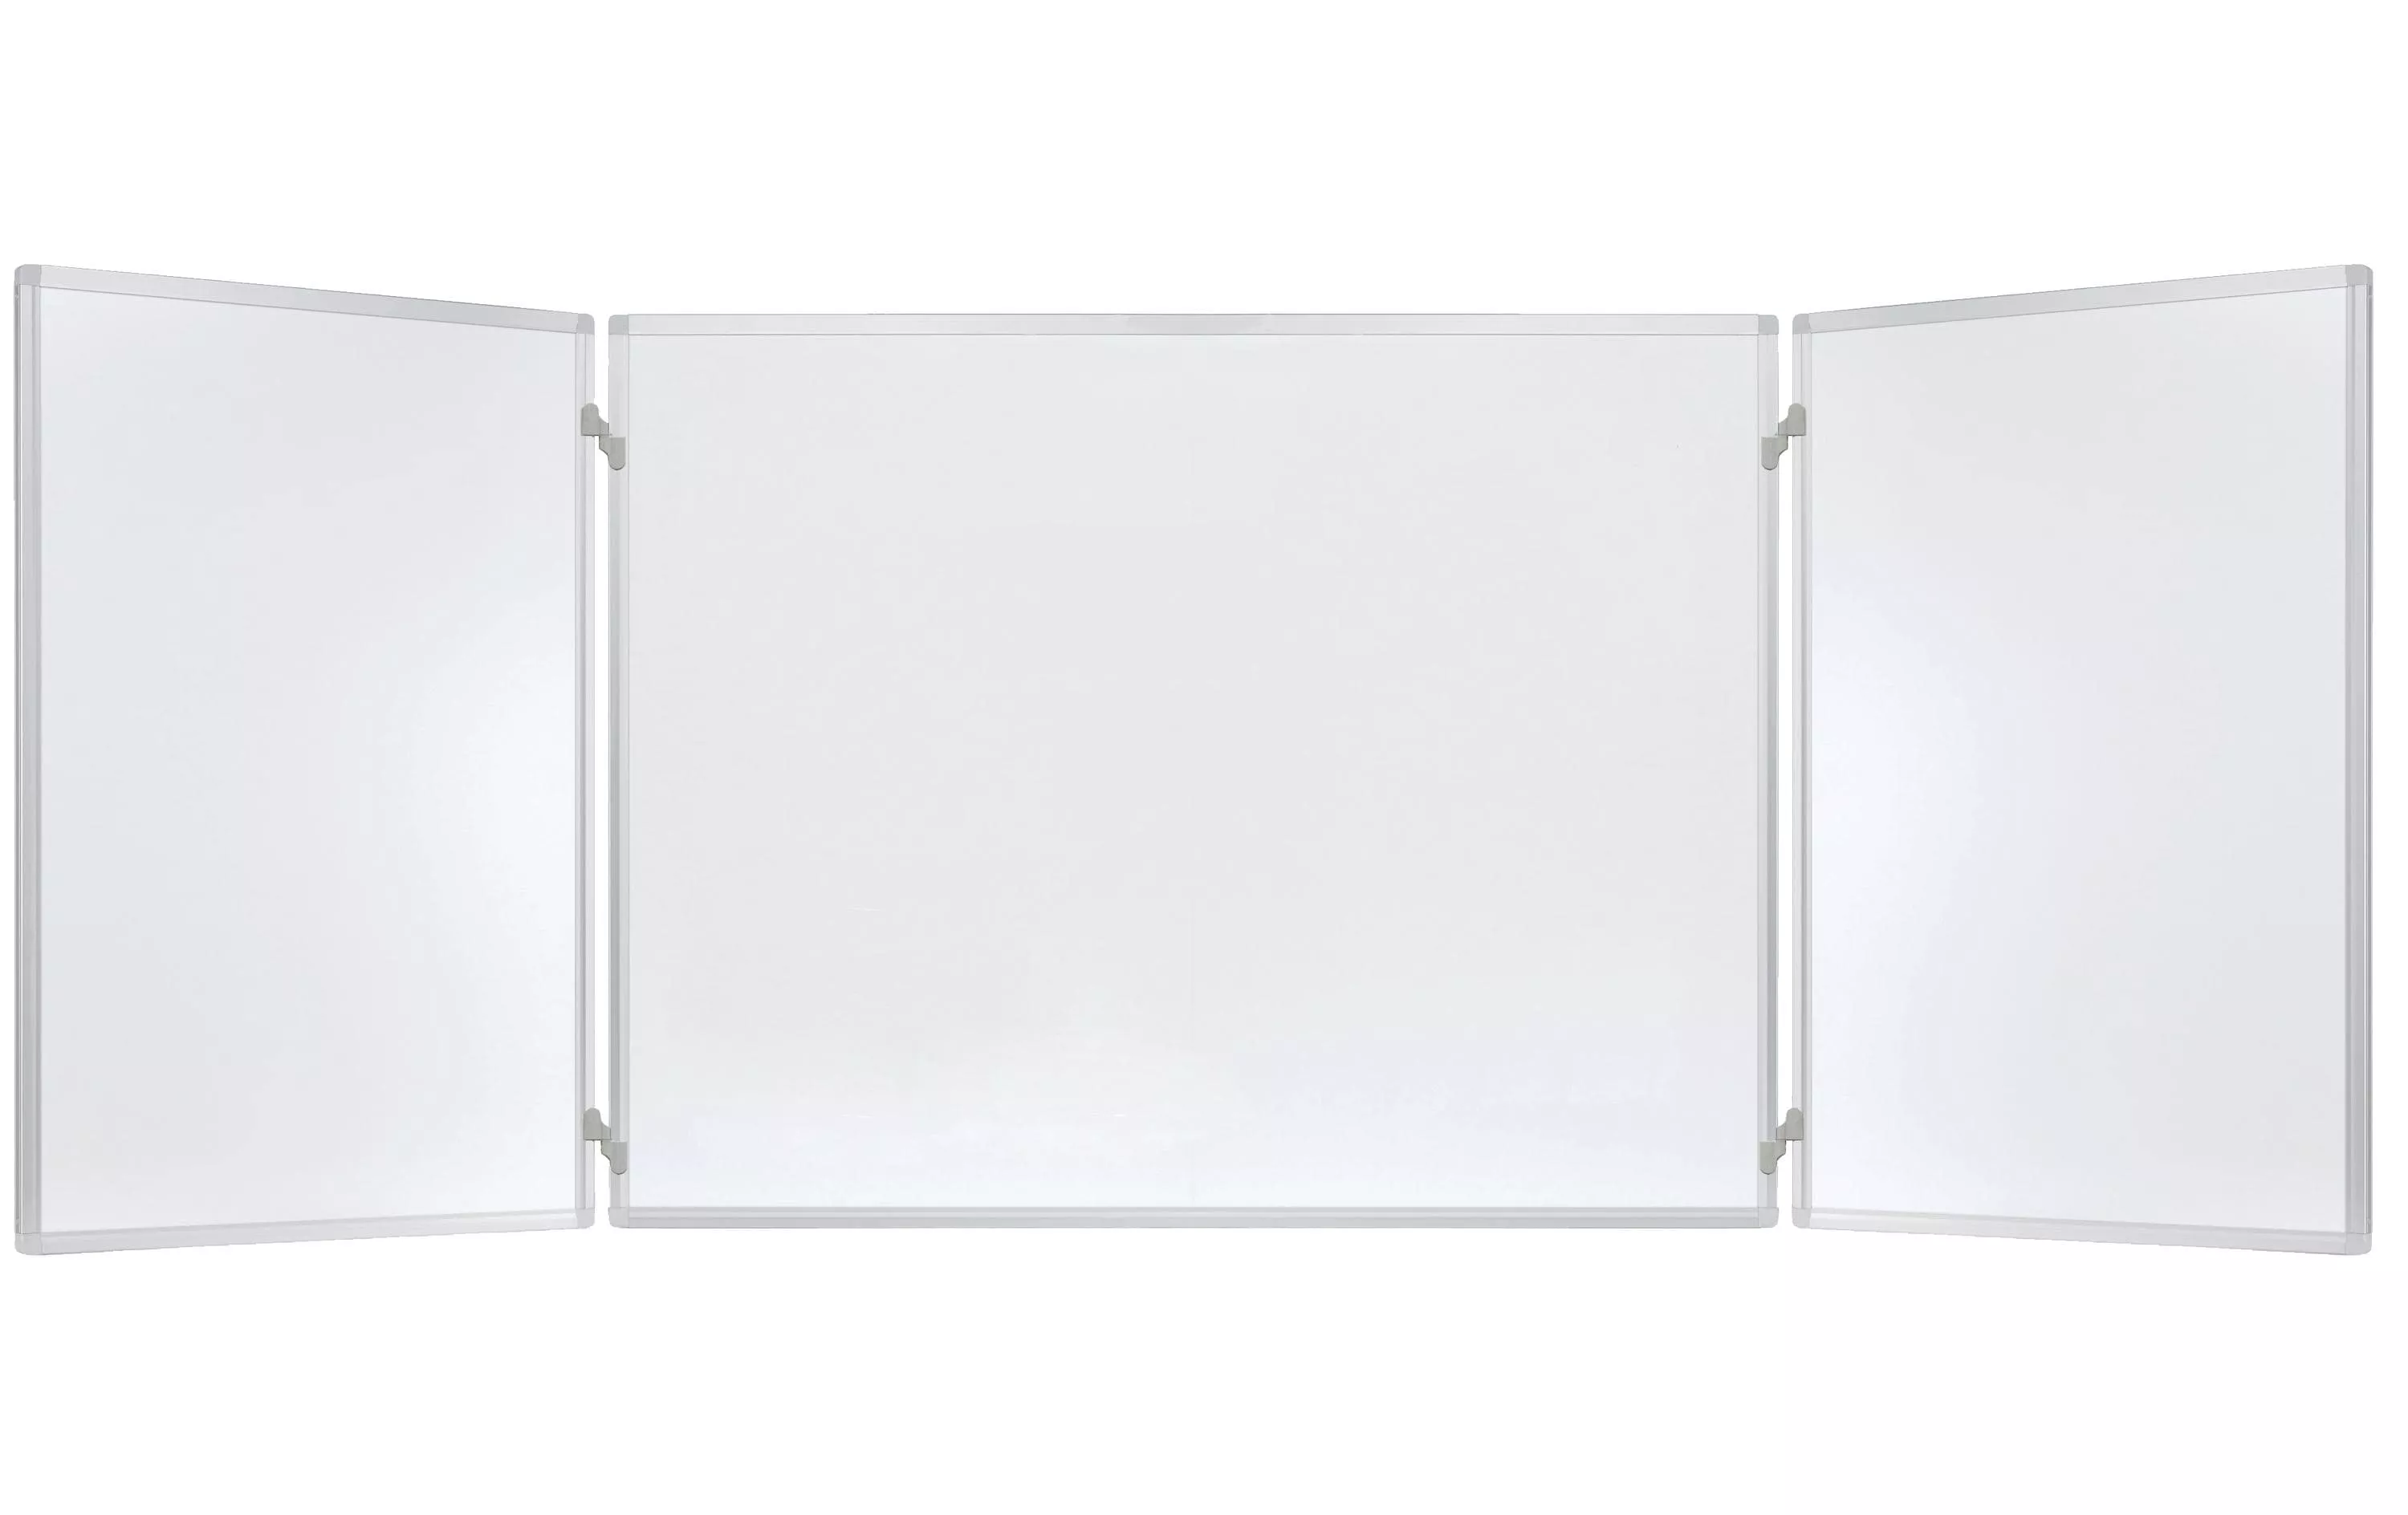 Tableau blanc sur pied 150 x 100cm - laqué